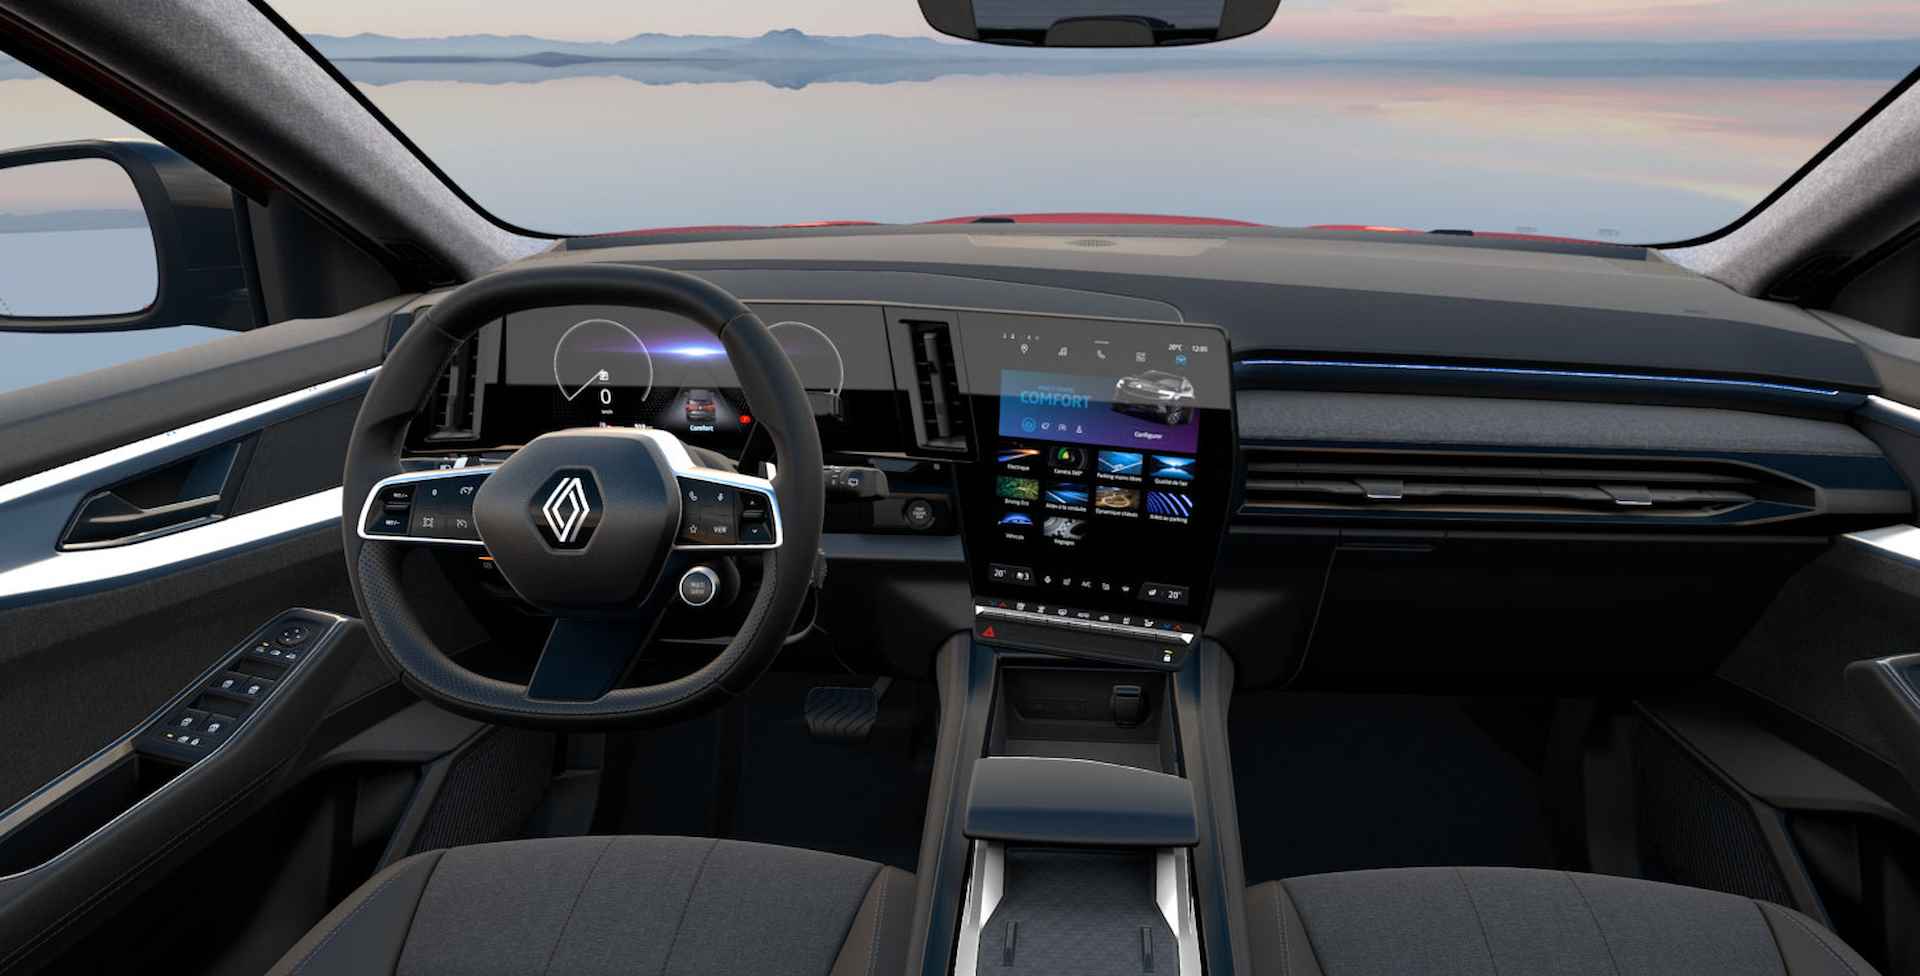 Renault Espace E-Tech Hybrid 200 techno 5p. | Nieuw te bestellen in diversen kleuren | NU met een aantrekkelijk voordeel van € 2.500,- | - 9/13